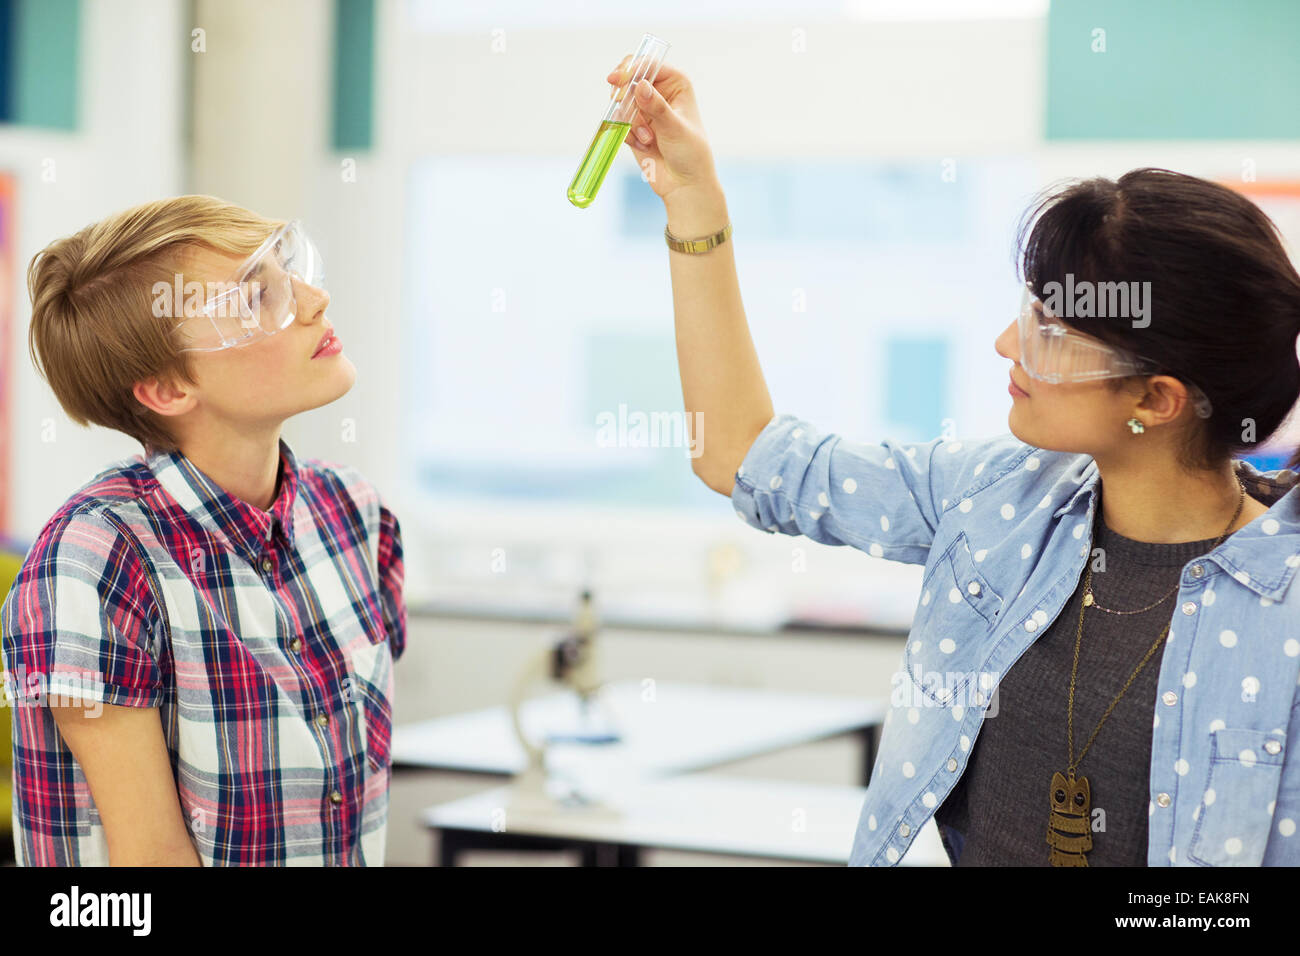 Insegnante e studente durante la lezione di Chimica, indossare occhiali protettivi e guardando il tubo di prova con liquido verde Foto Stock